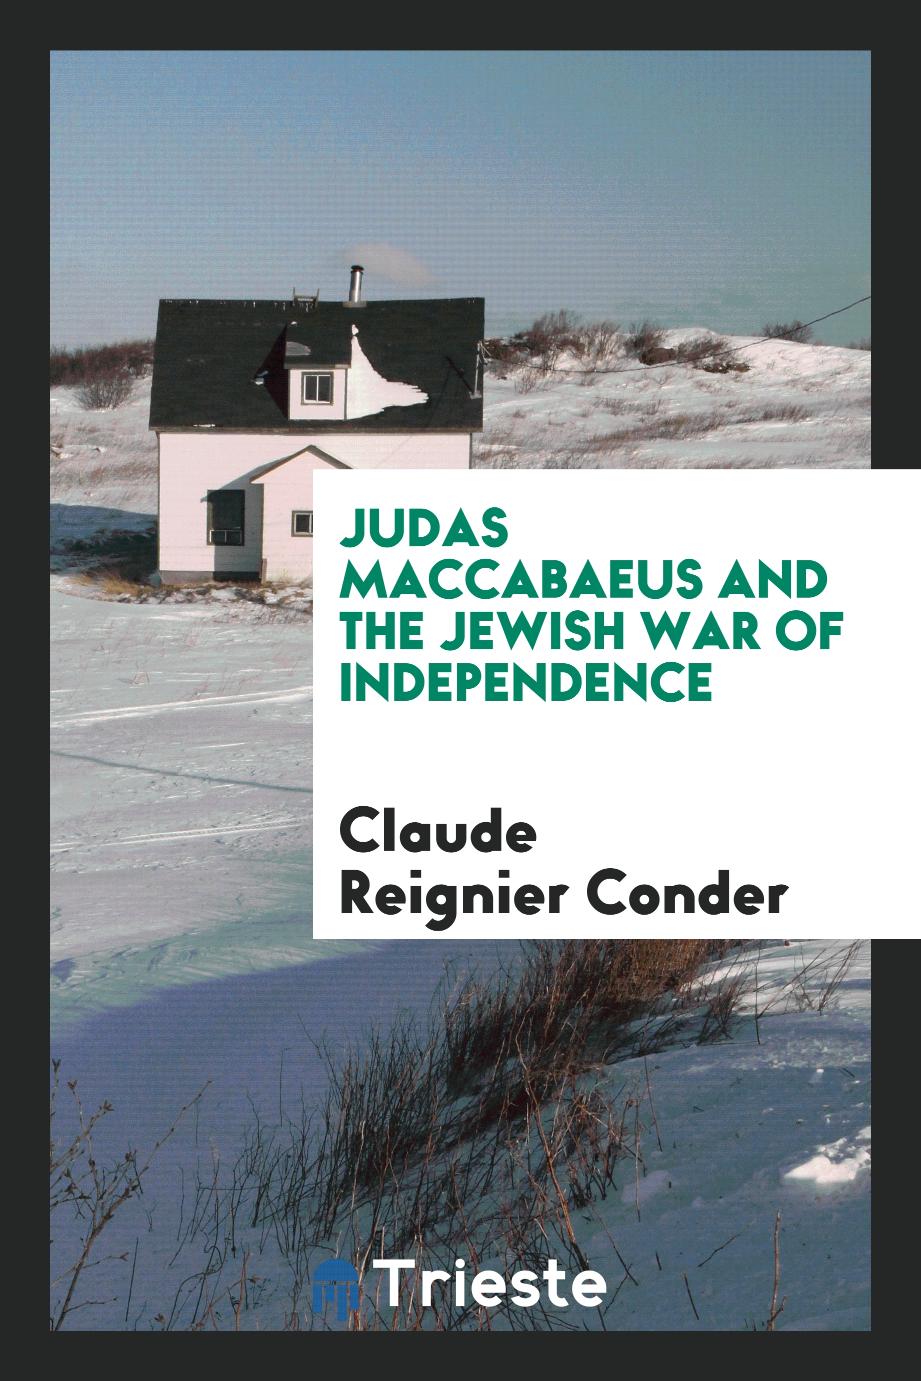 Judas Maccabaeus and the Jewish war of independence